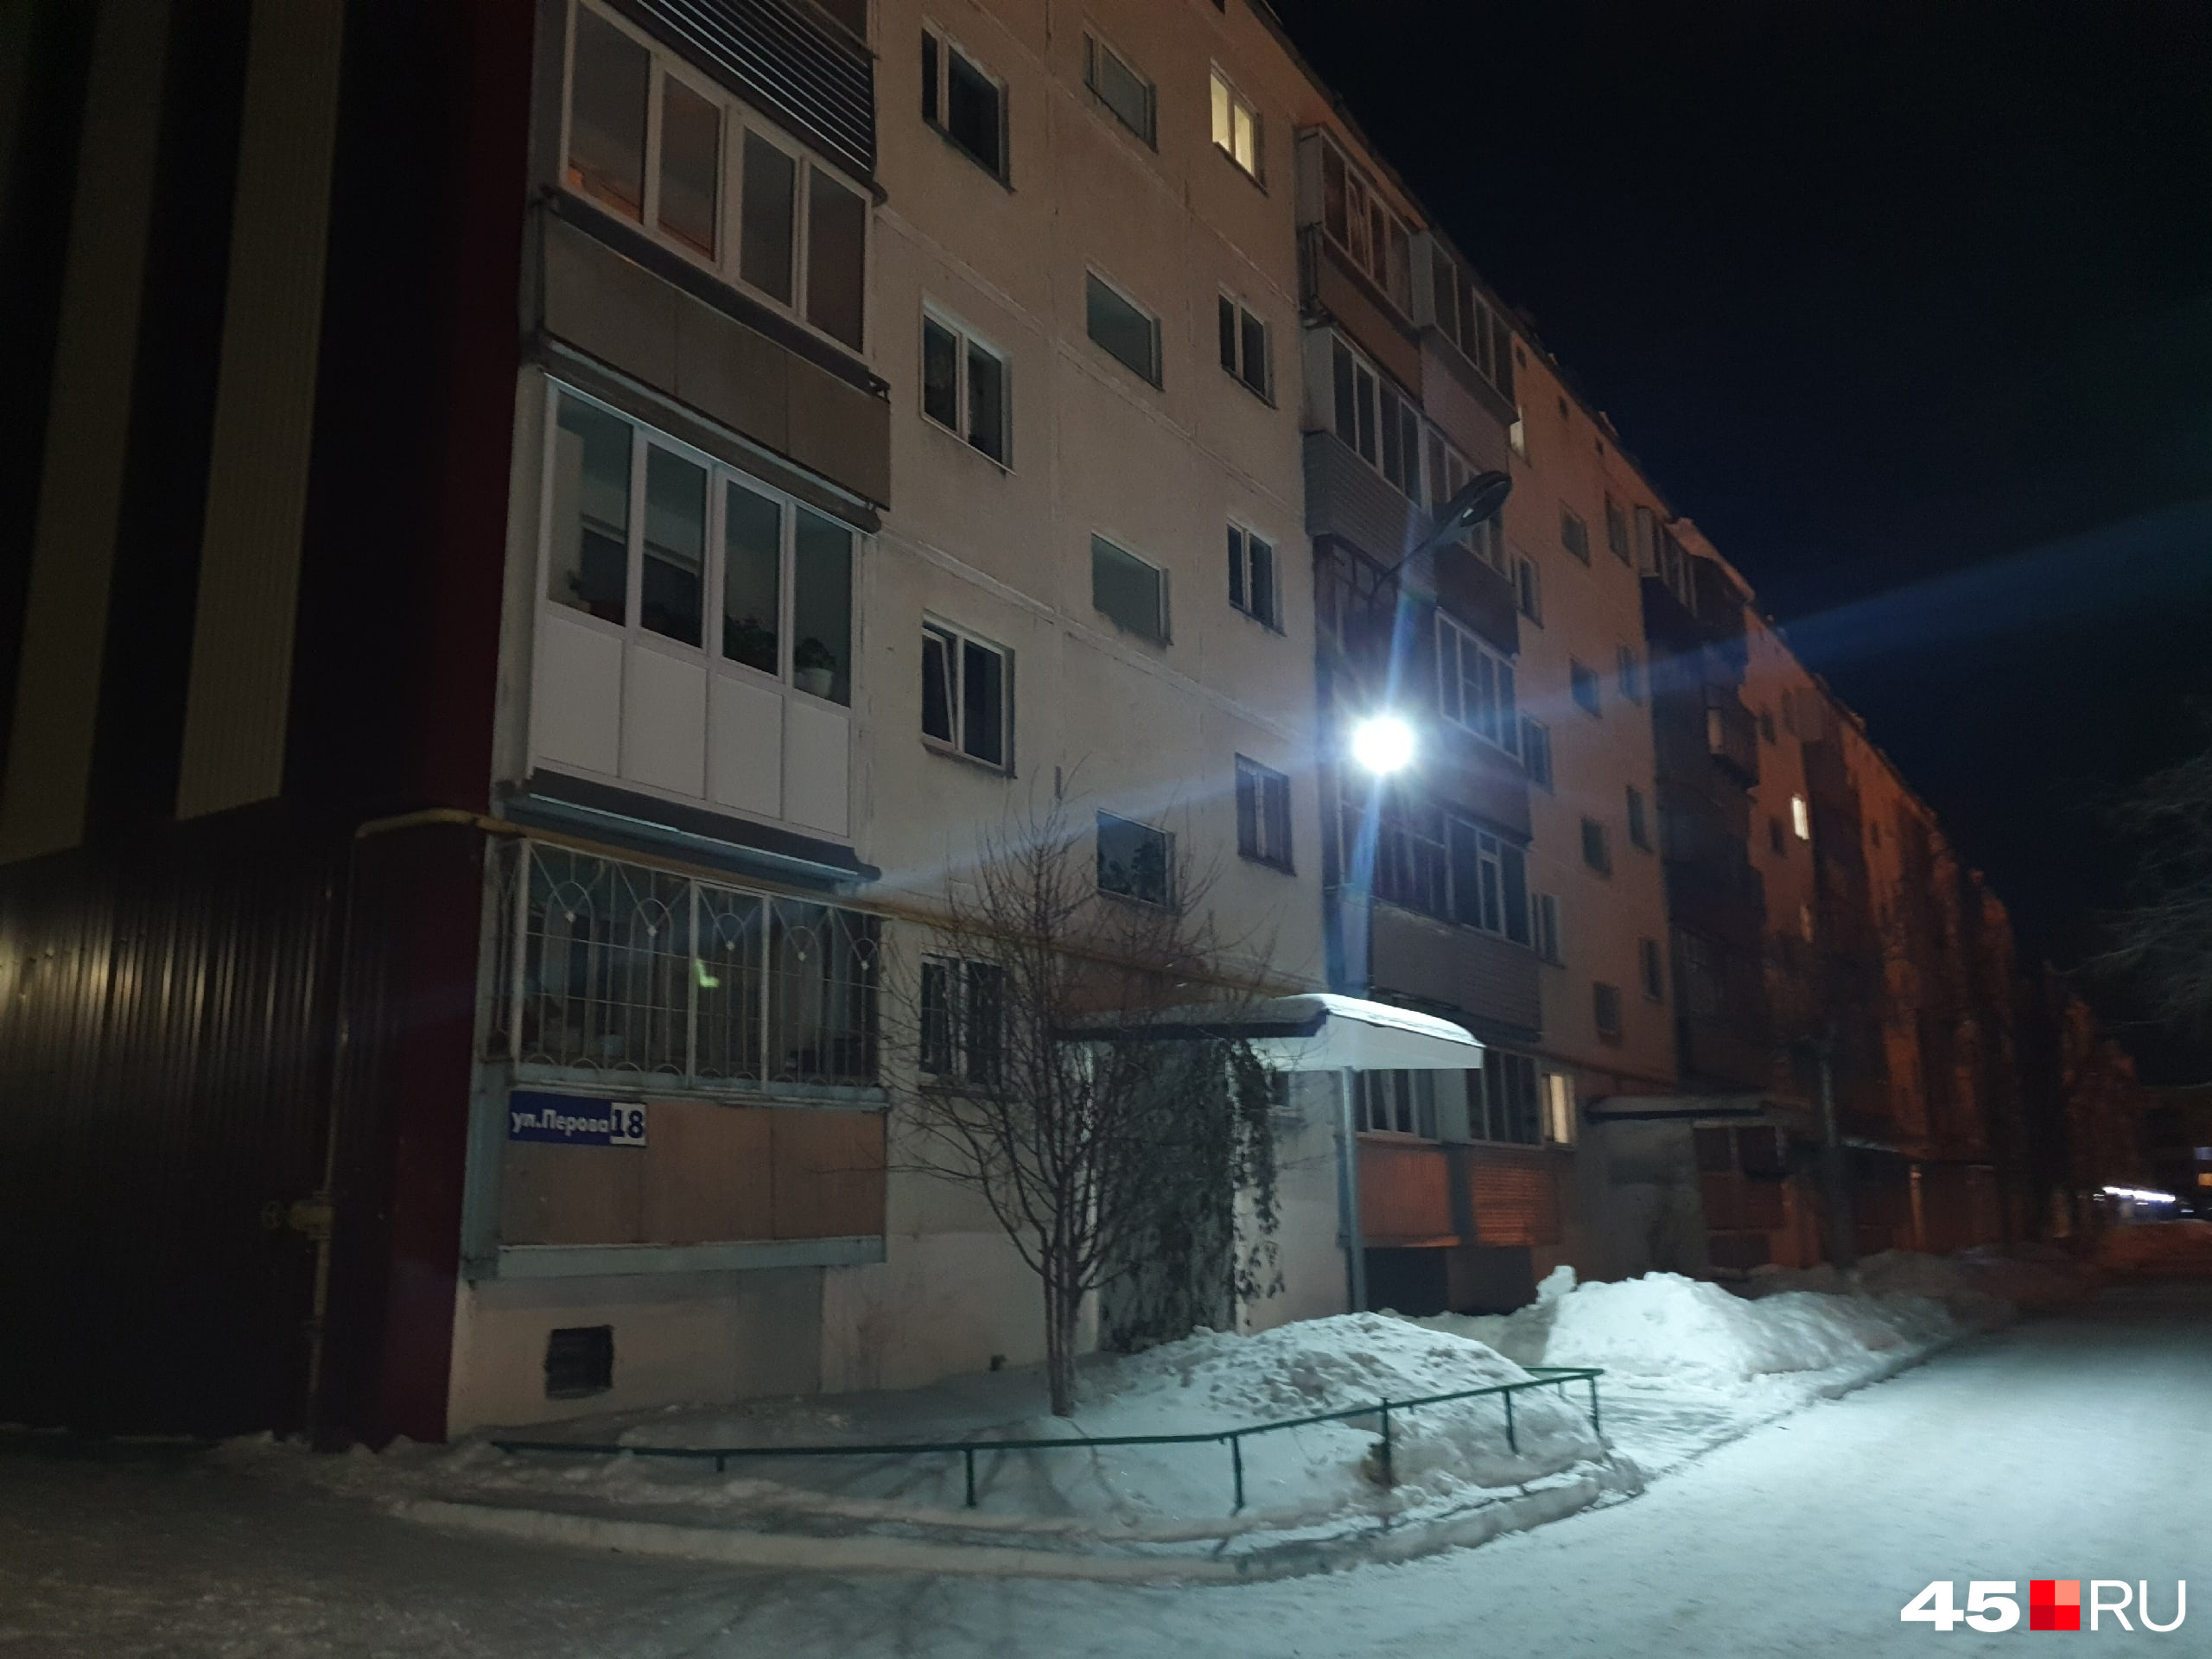 Что происходит у дома в Кургане, где взорвался газ? - 2 марта 2023 - 45.ru